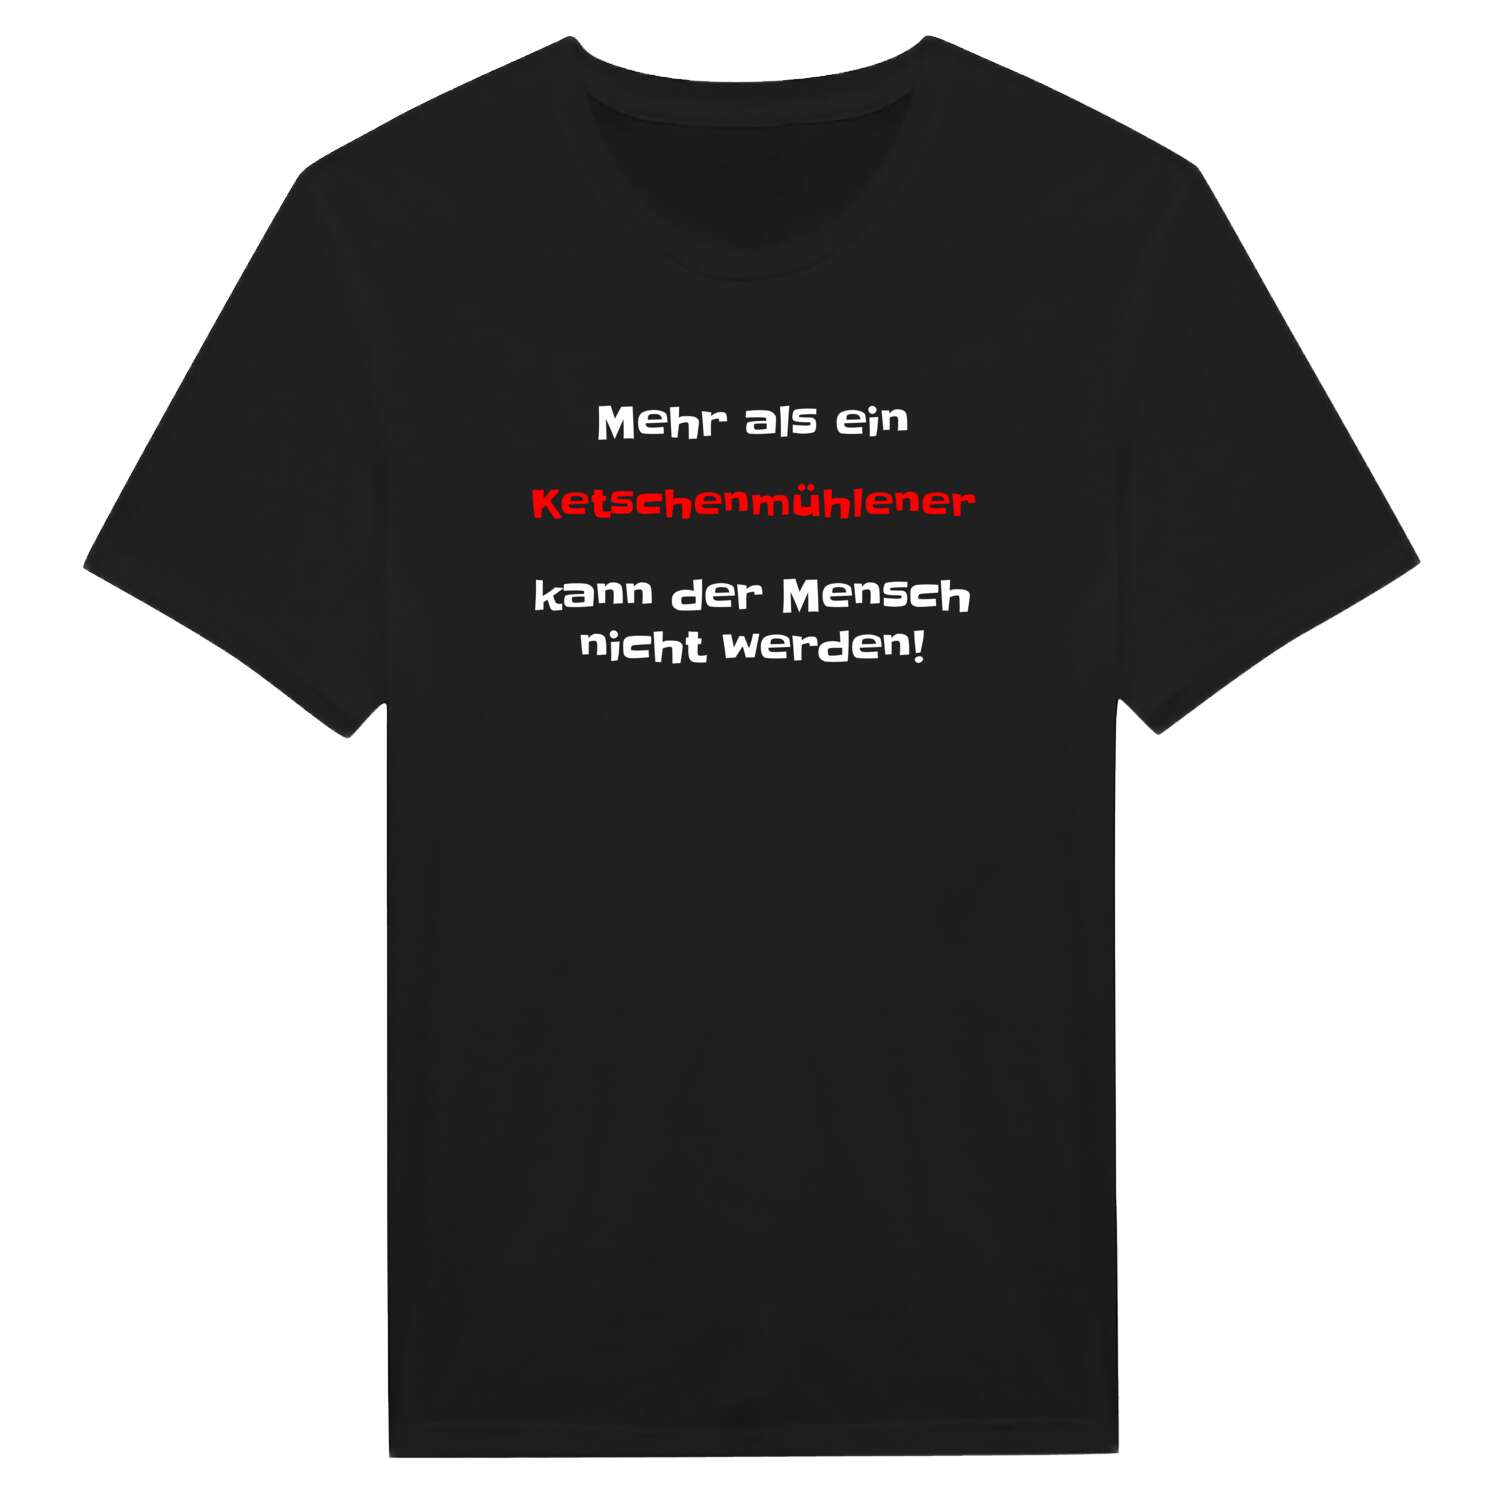 Ketschenmühle T-Shirt »Mehr als ein«